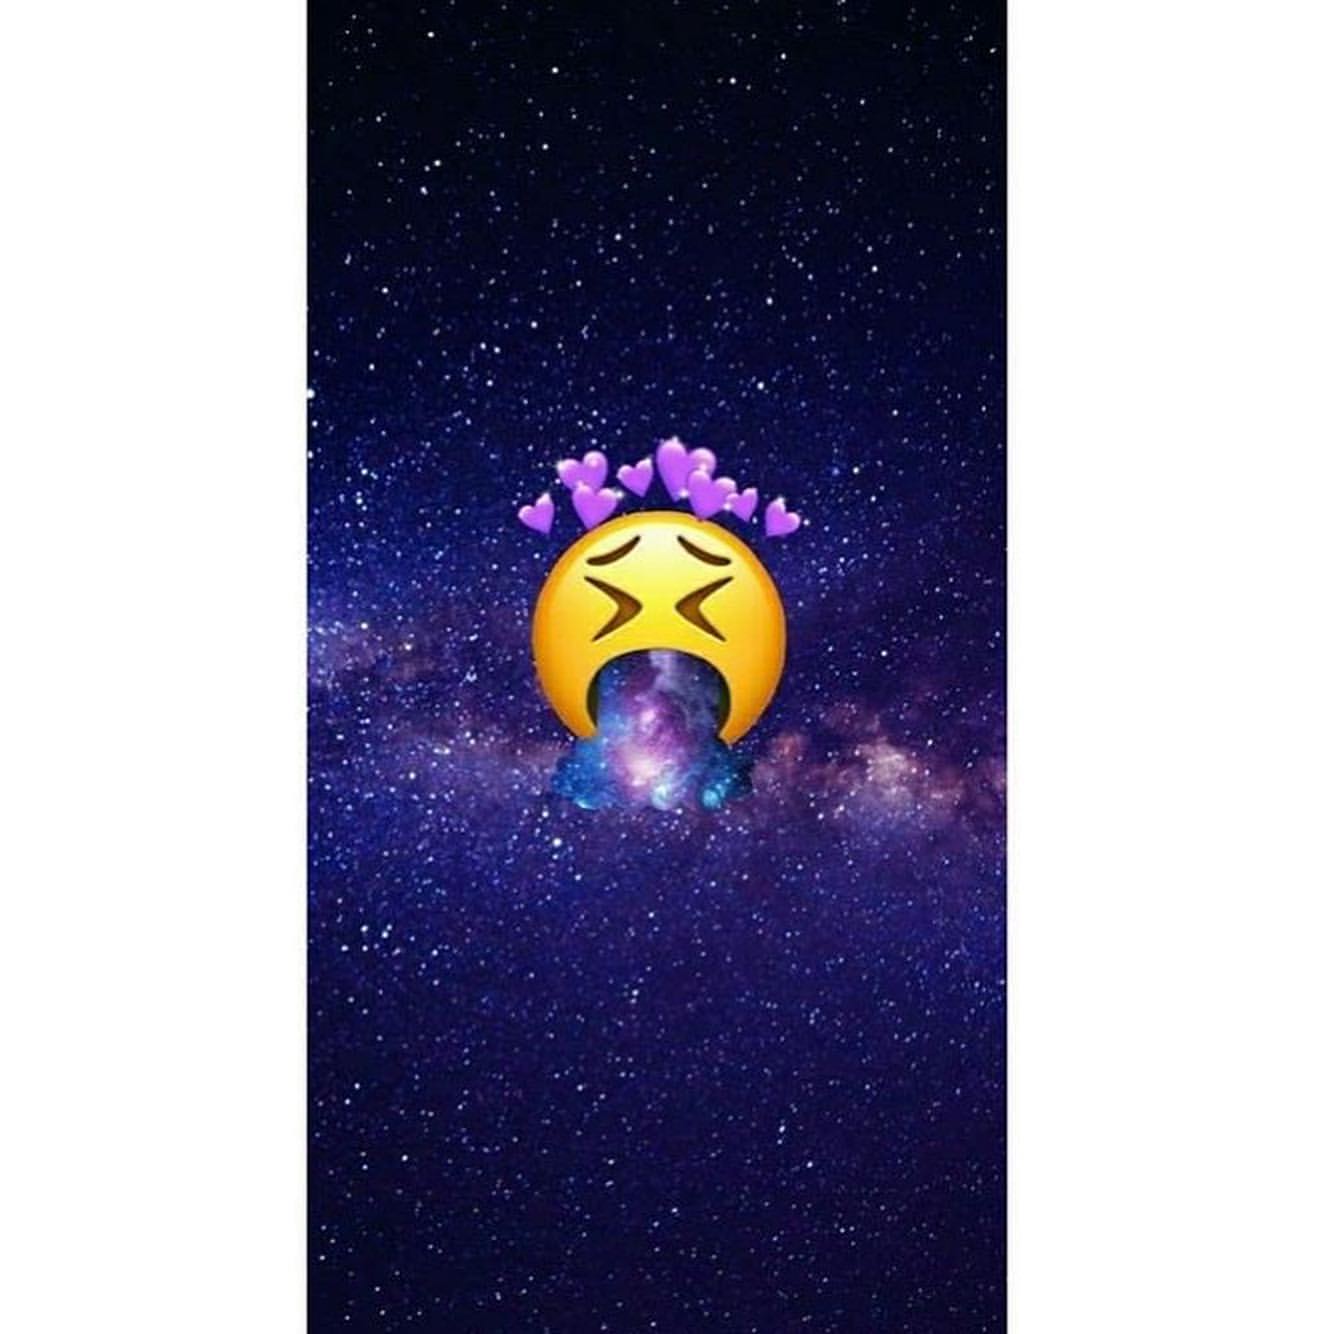 Emojis Galaxy Wallpapers On Wallpaperdog